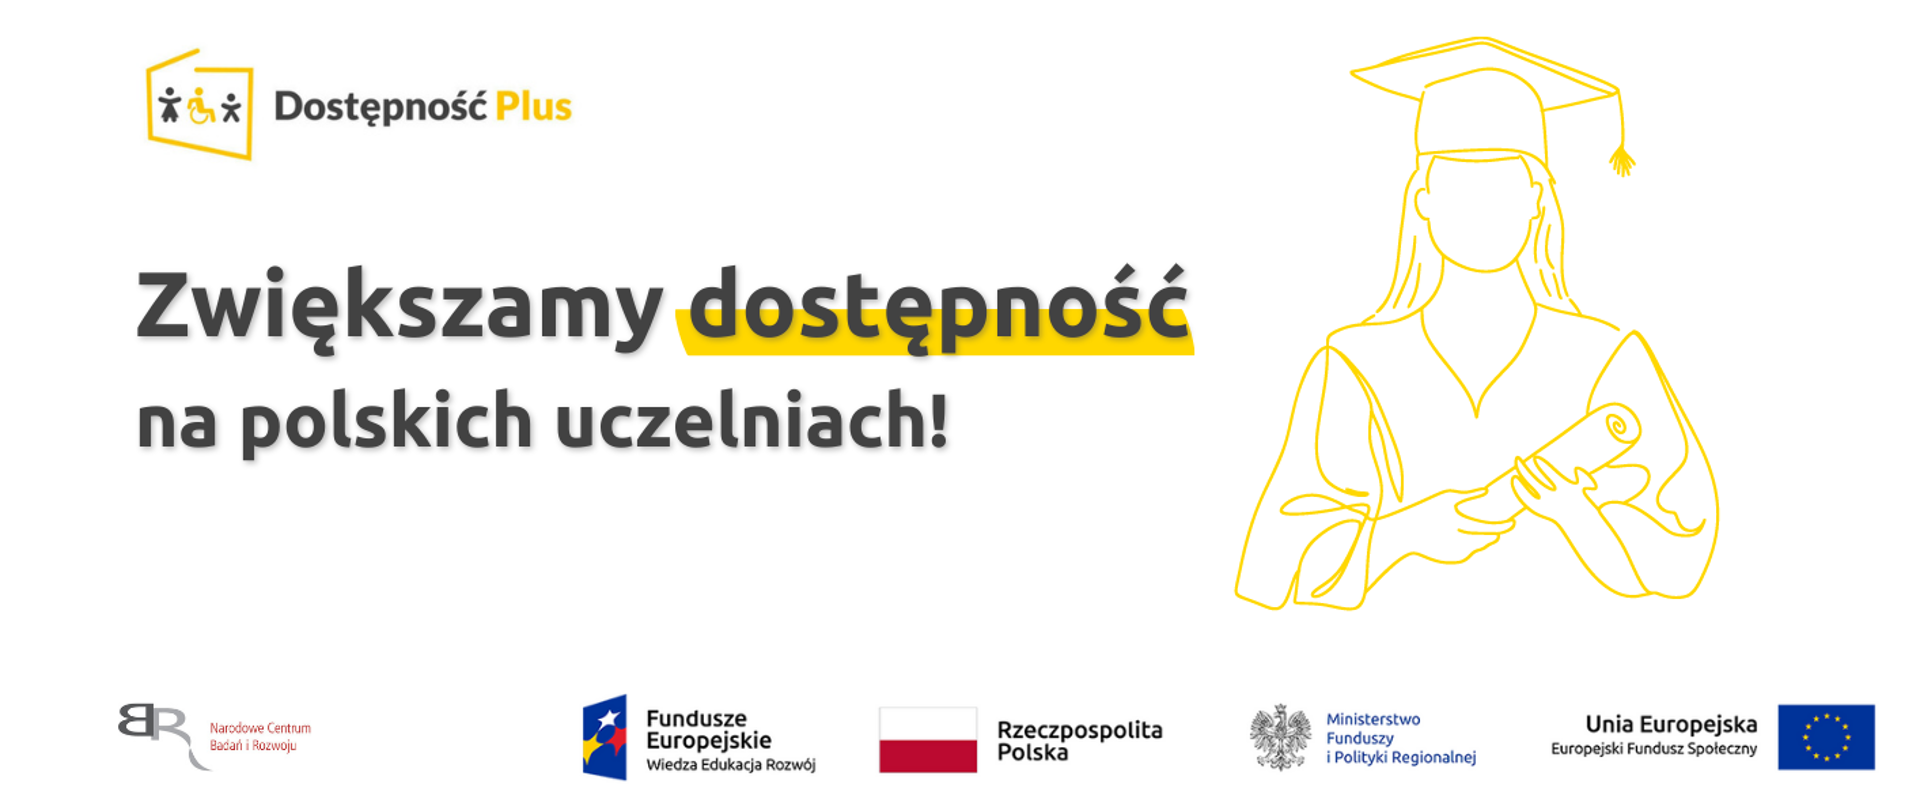 Na grafice napis "Zwiększamy dostępność na polskich uczelniach" oraz rysunek przedstawiający studentkę. Na dole logotypy.